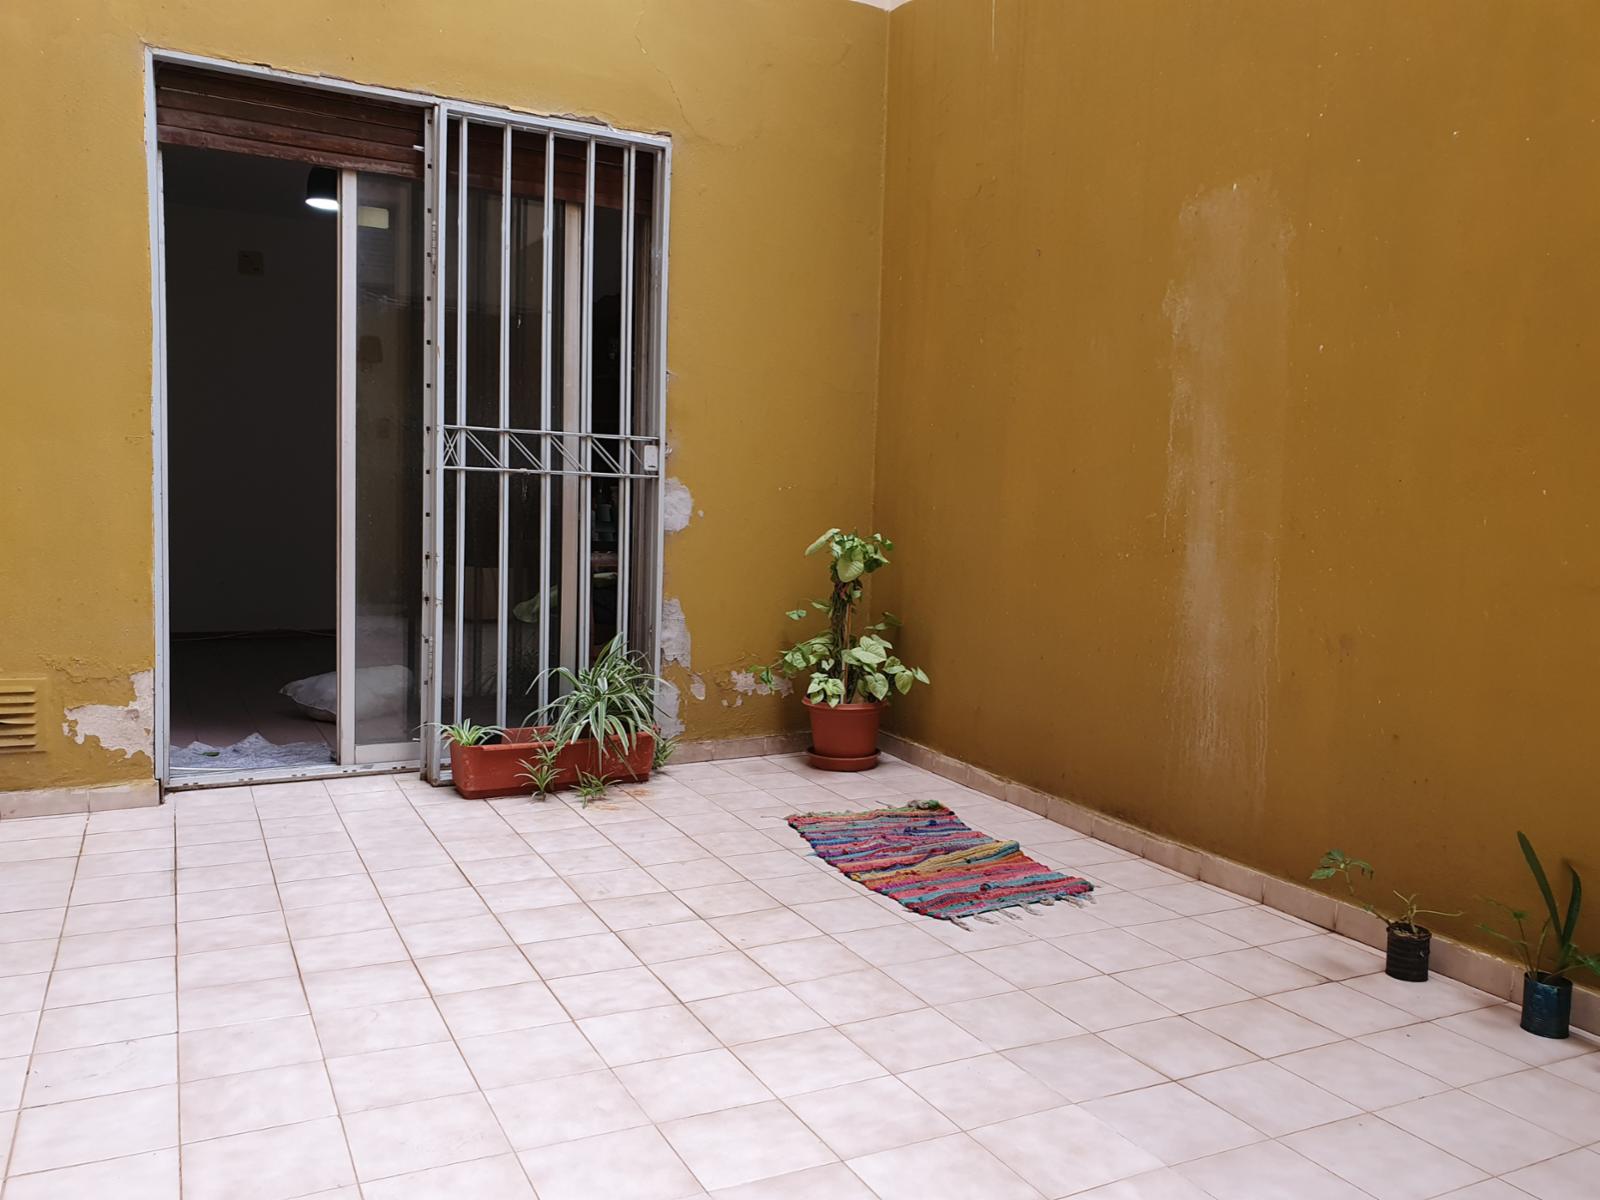 Vendo departamento amplio con balcón y patio - Córdoba Capital